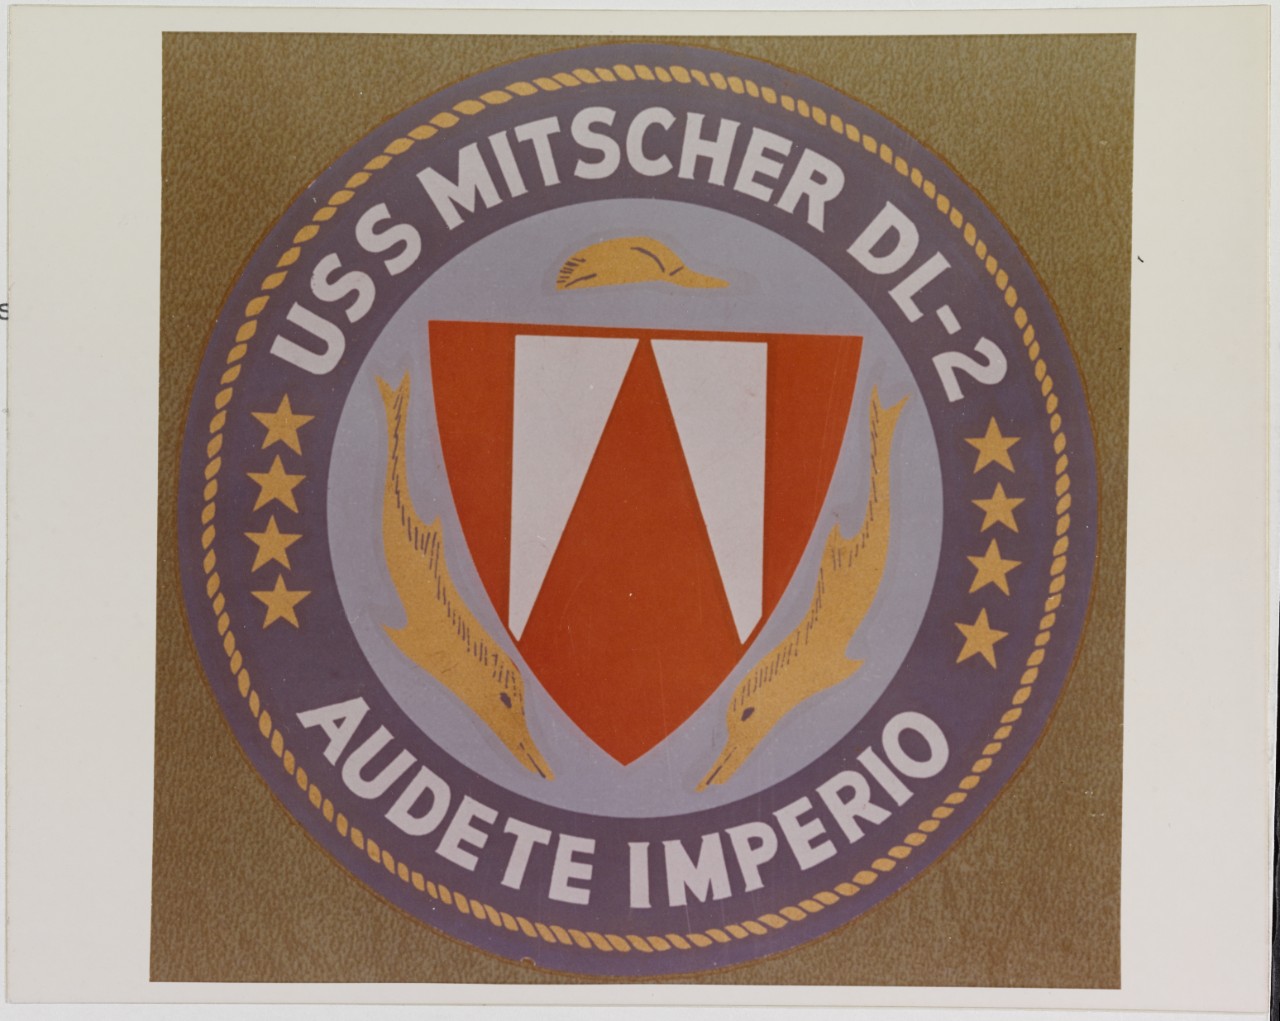 Insignia: USS MITSCHER (DL-2)